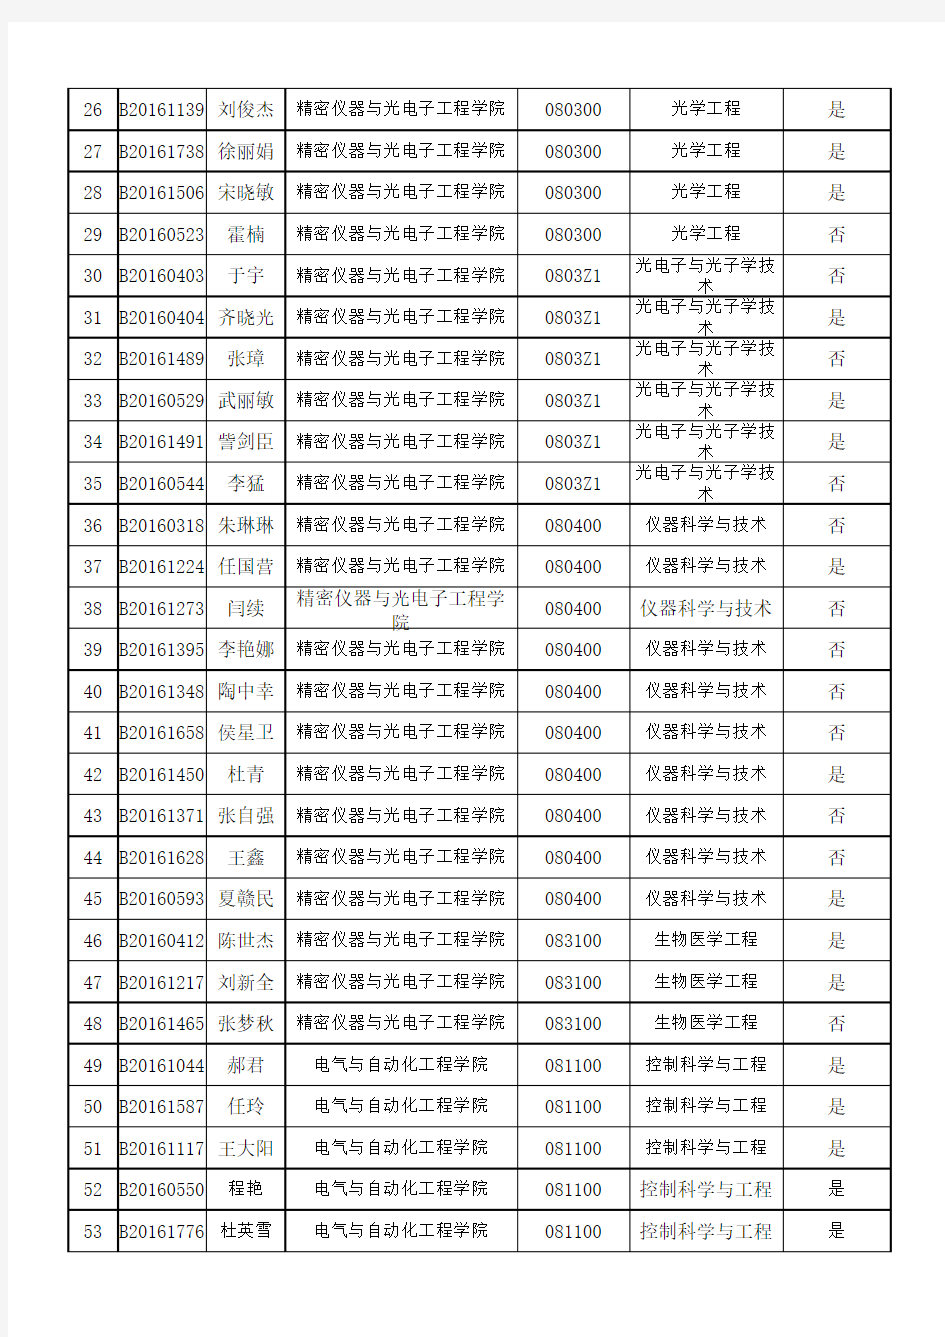 天津大学2016年普通招考类博士第一批审核情况公示名单